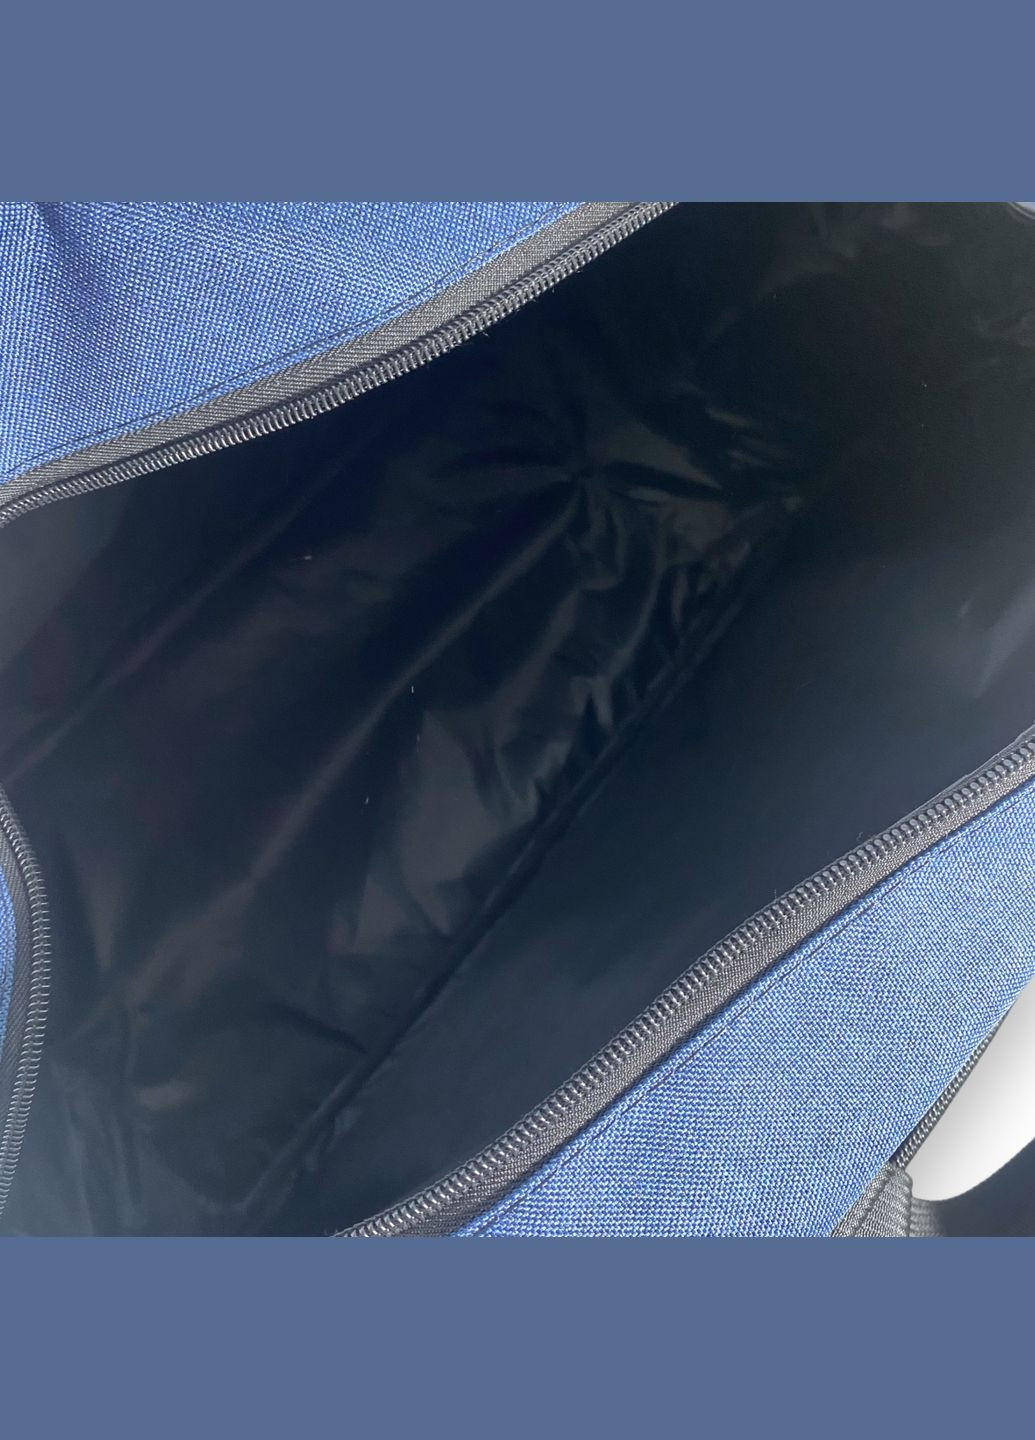 Дорожня сумка, одне відділення, фронтальні кишені, знімний ремінь, ніжки на дні, розмір 56*35*21см синя Favor (284337956)